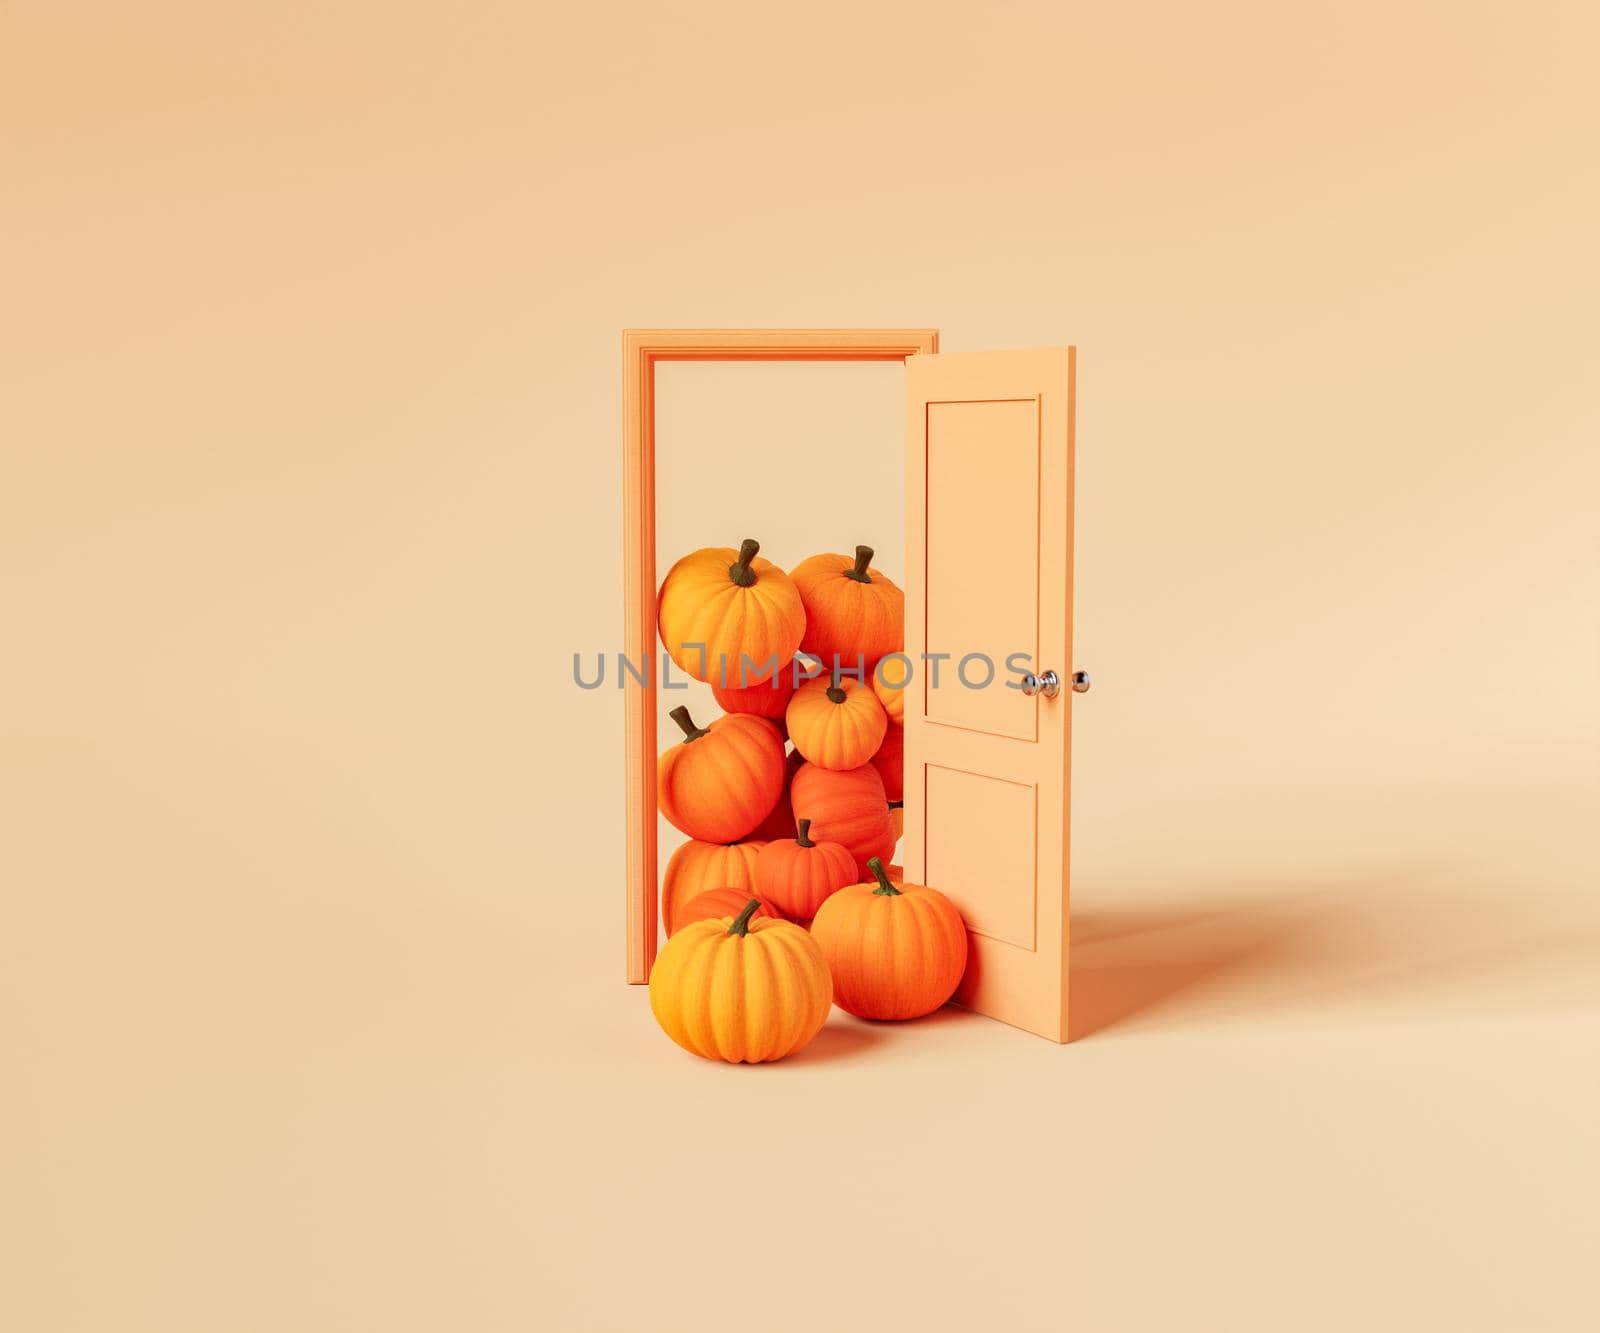 Creative 3D rendering of pile of orange pumpkins stacked at doorway against beige background